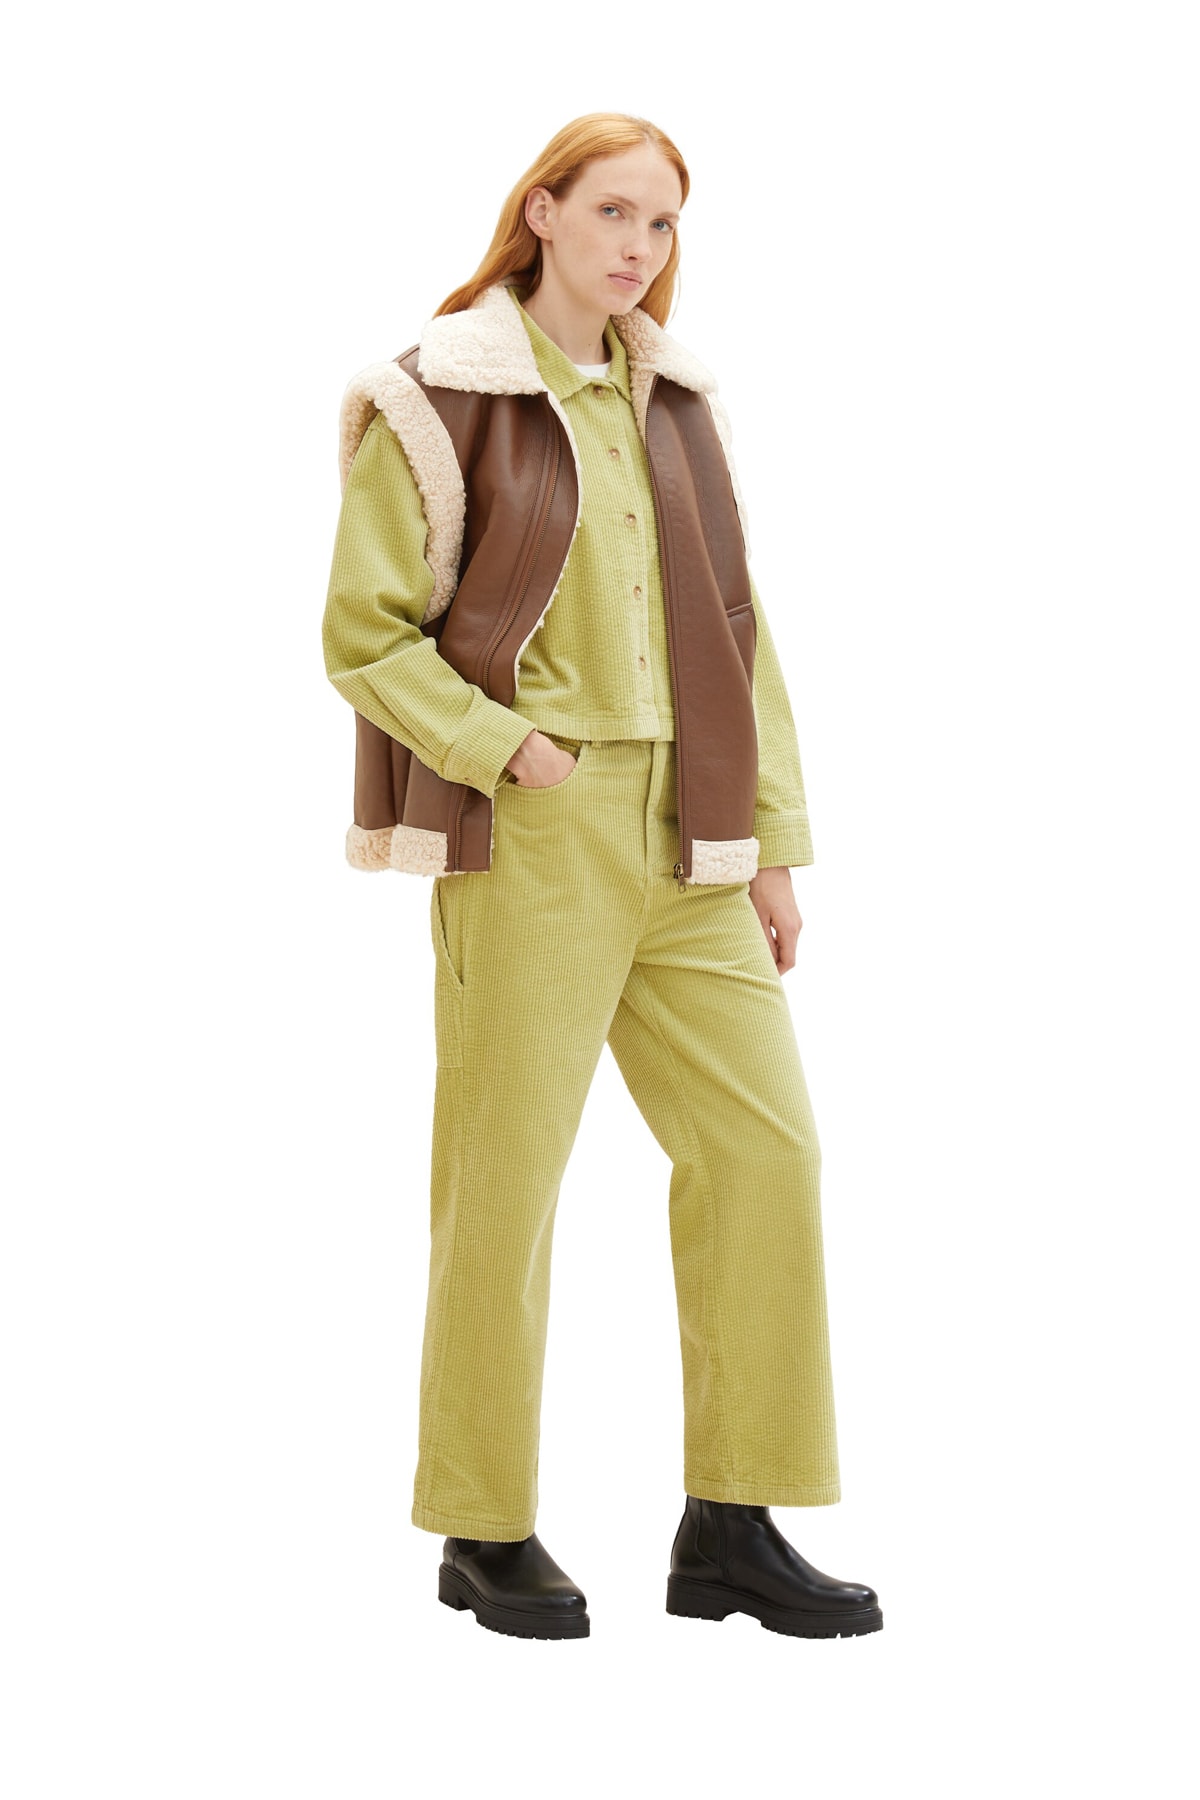 Брюки Женские/Девочки шнуровые брюки Carpender Tom Tailor Denim, оранжевый худи tom tailor размер xxl оранжевый